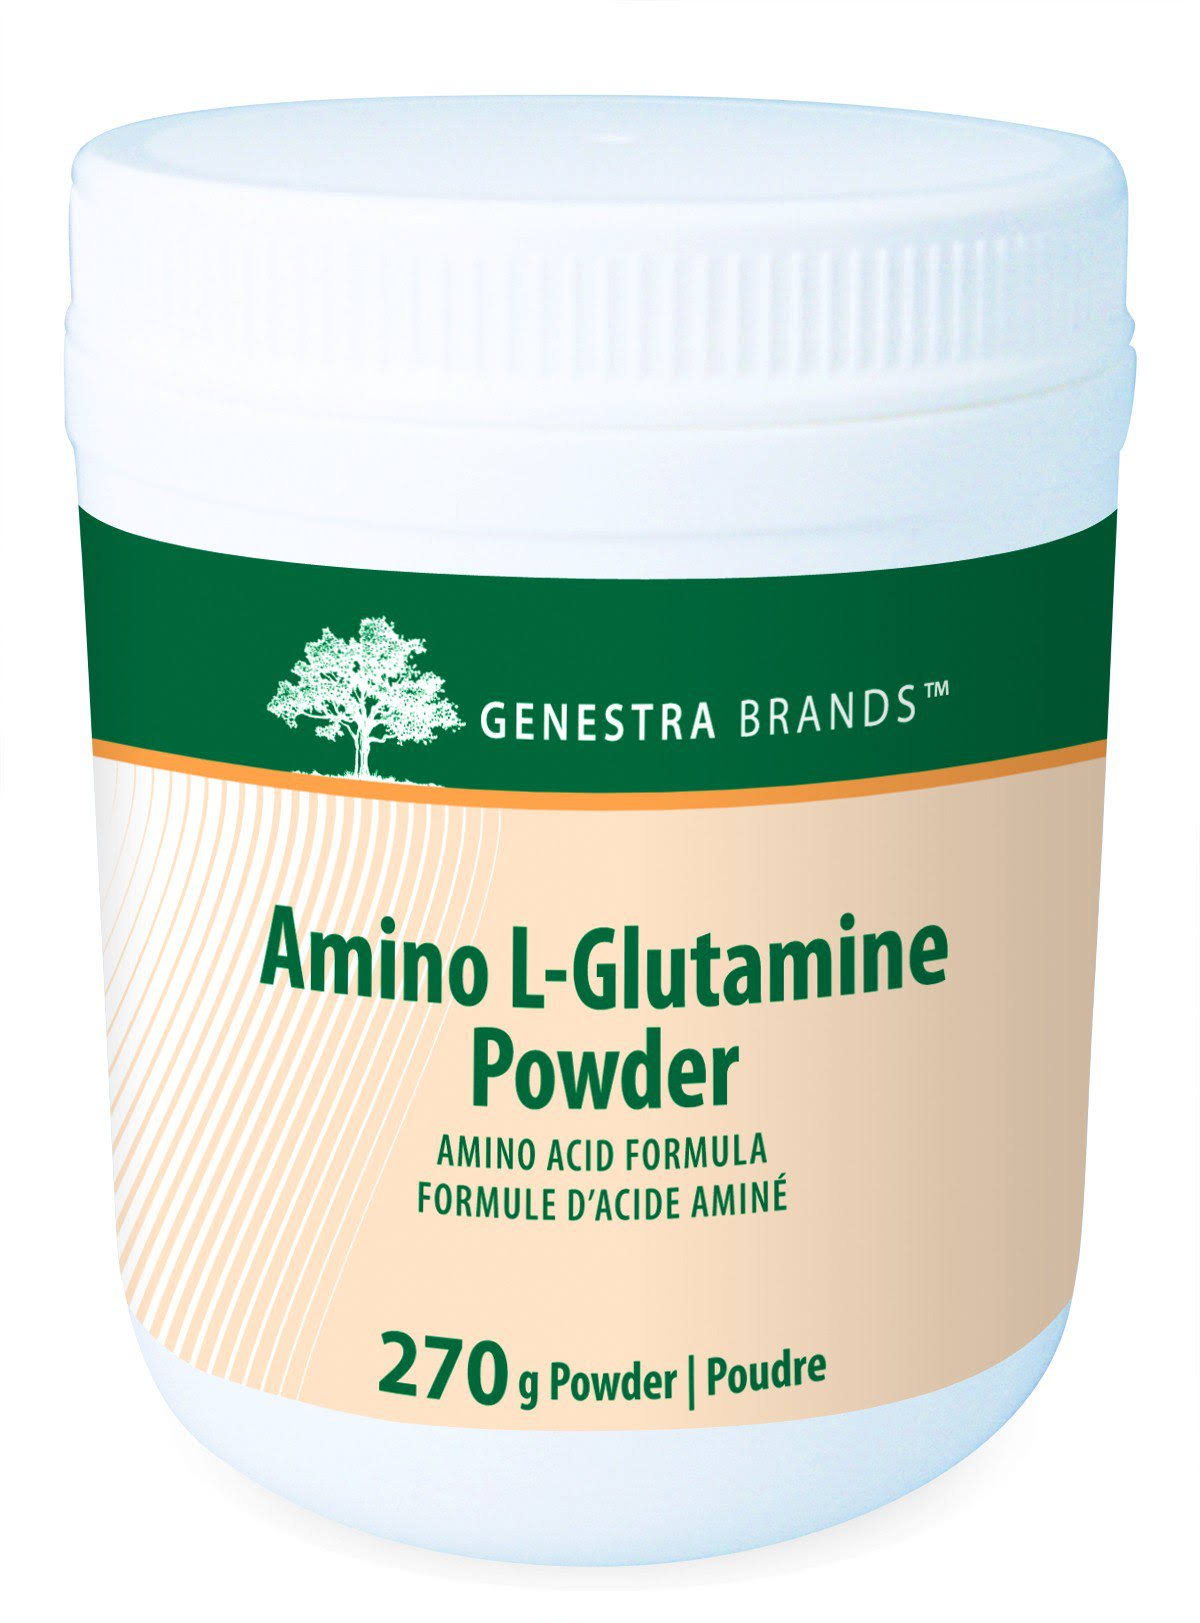 Genestra Brands Amino L-Glutamine Powder Supplement - 270g